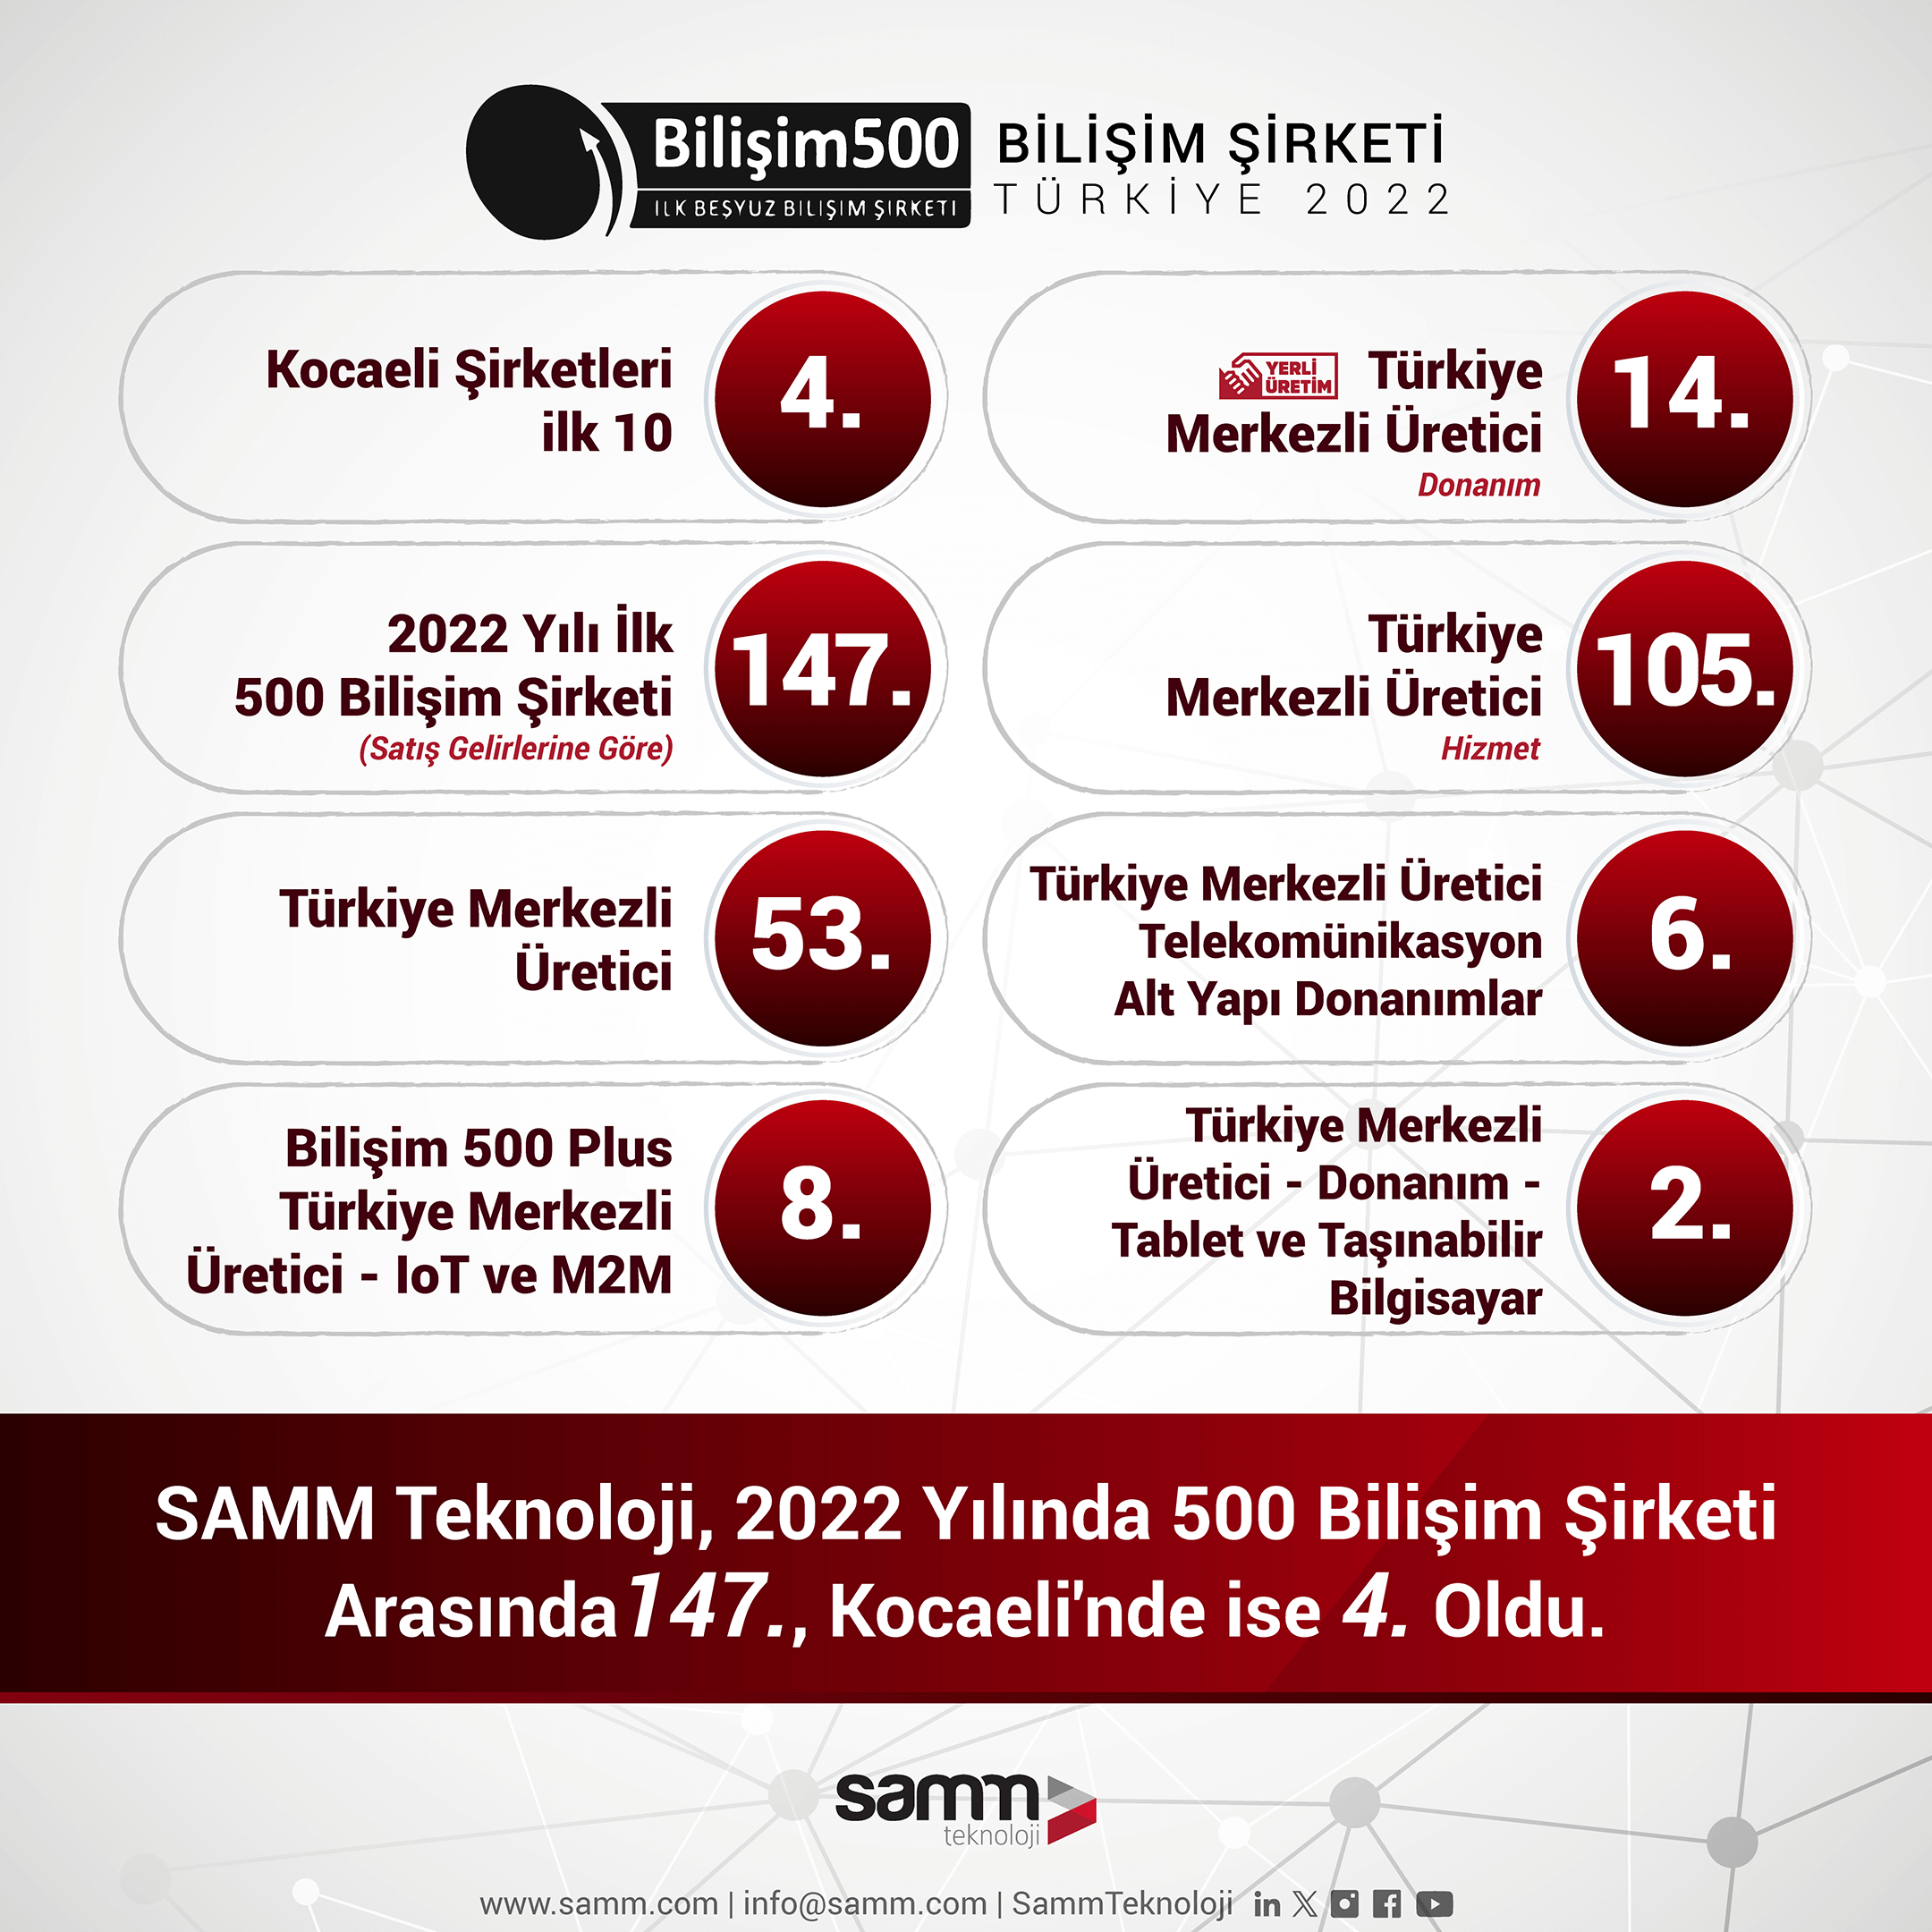 SAMM Teknoloji “Bilişim 500” sıralamasında 147. Kocaeli’nde de 4. büyük Bilişim Şirketi